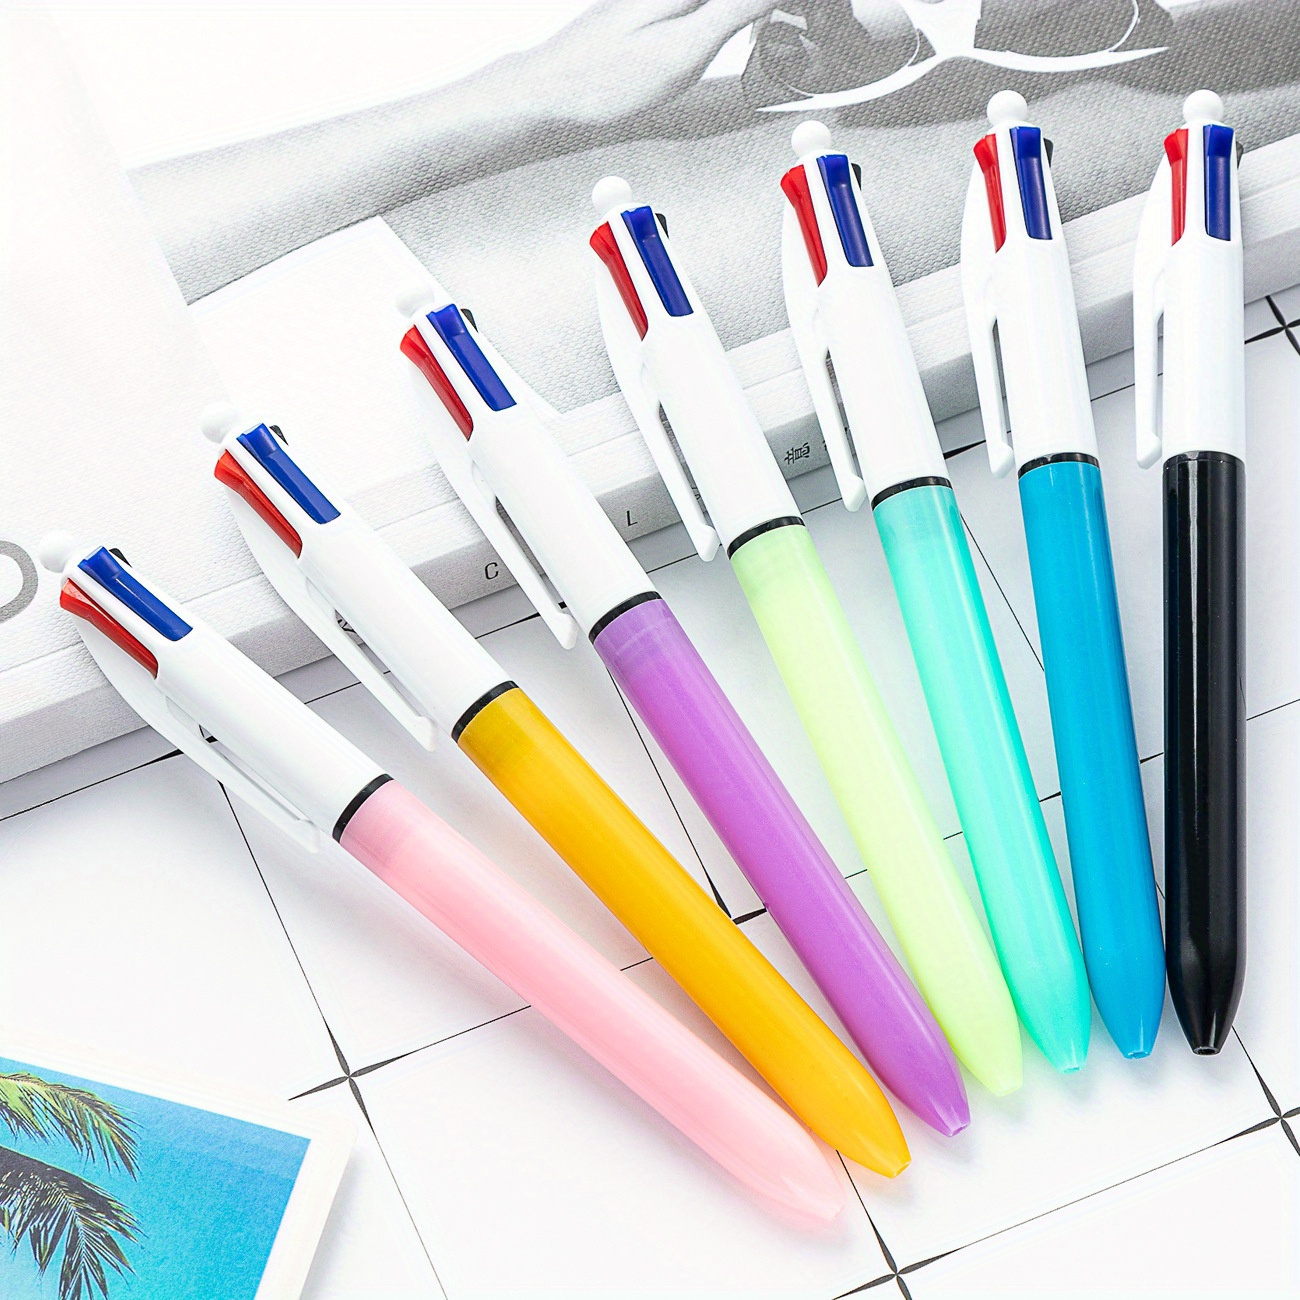 

Lot de 8 stylos à bille multicolores - Stylos en plastique rétractables 4-en-1 à pointe moyenne pour le journaling et le surlignage, adaptés aux personnes de 14 ans et plus - Couleurs aléatoires